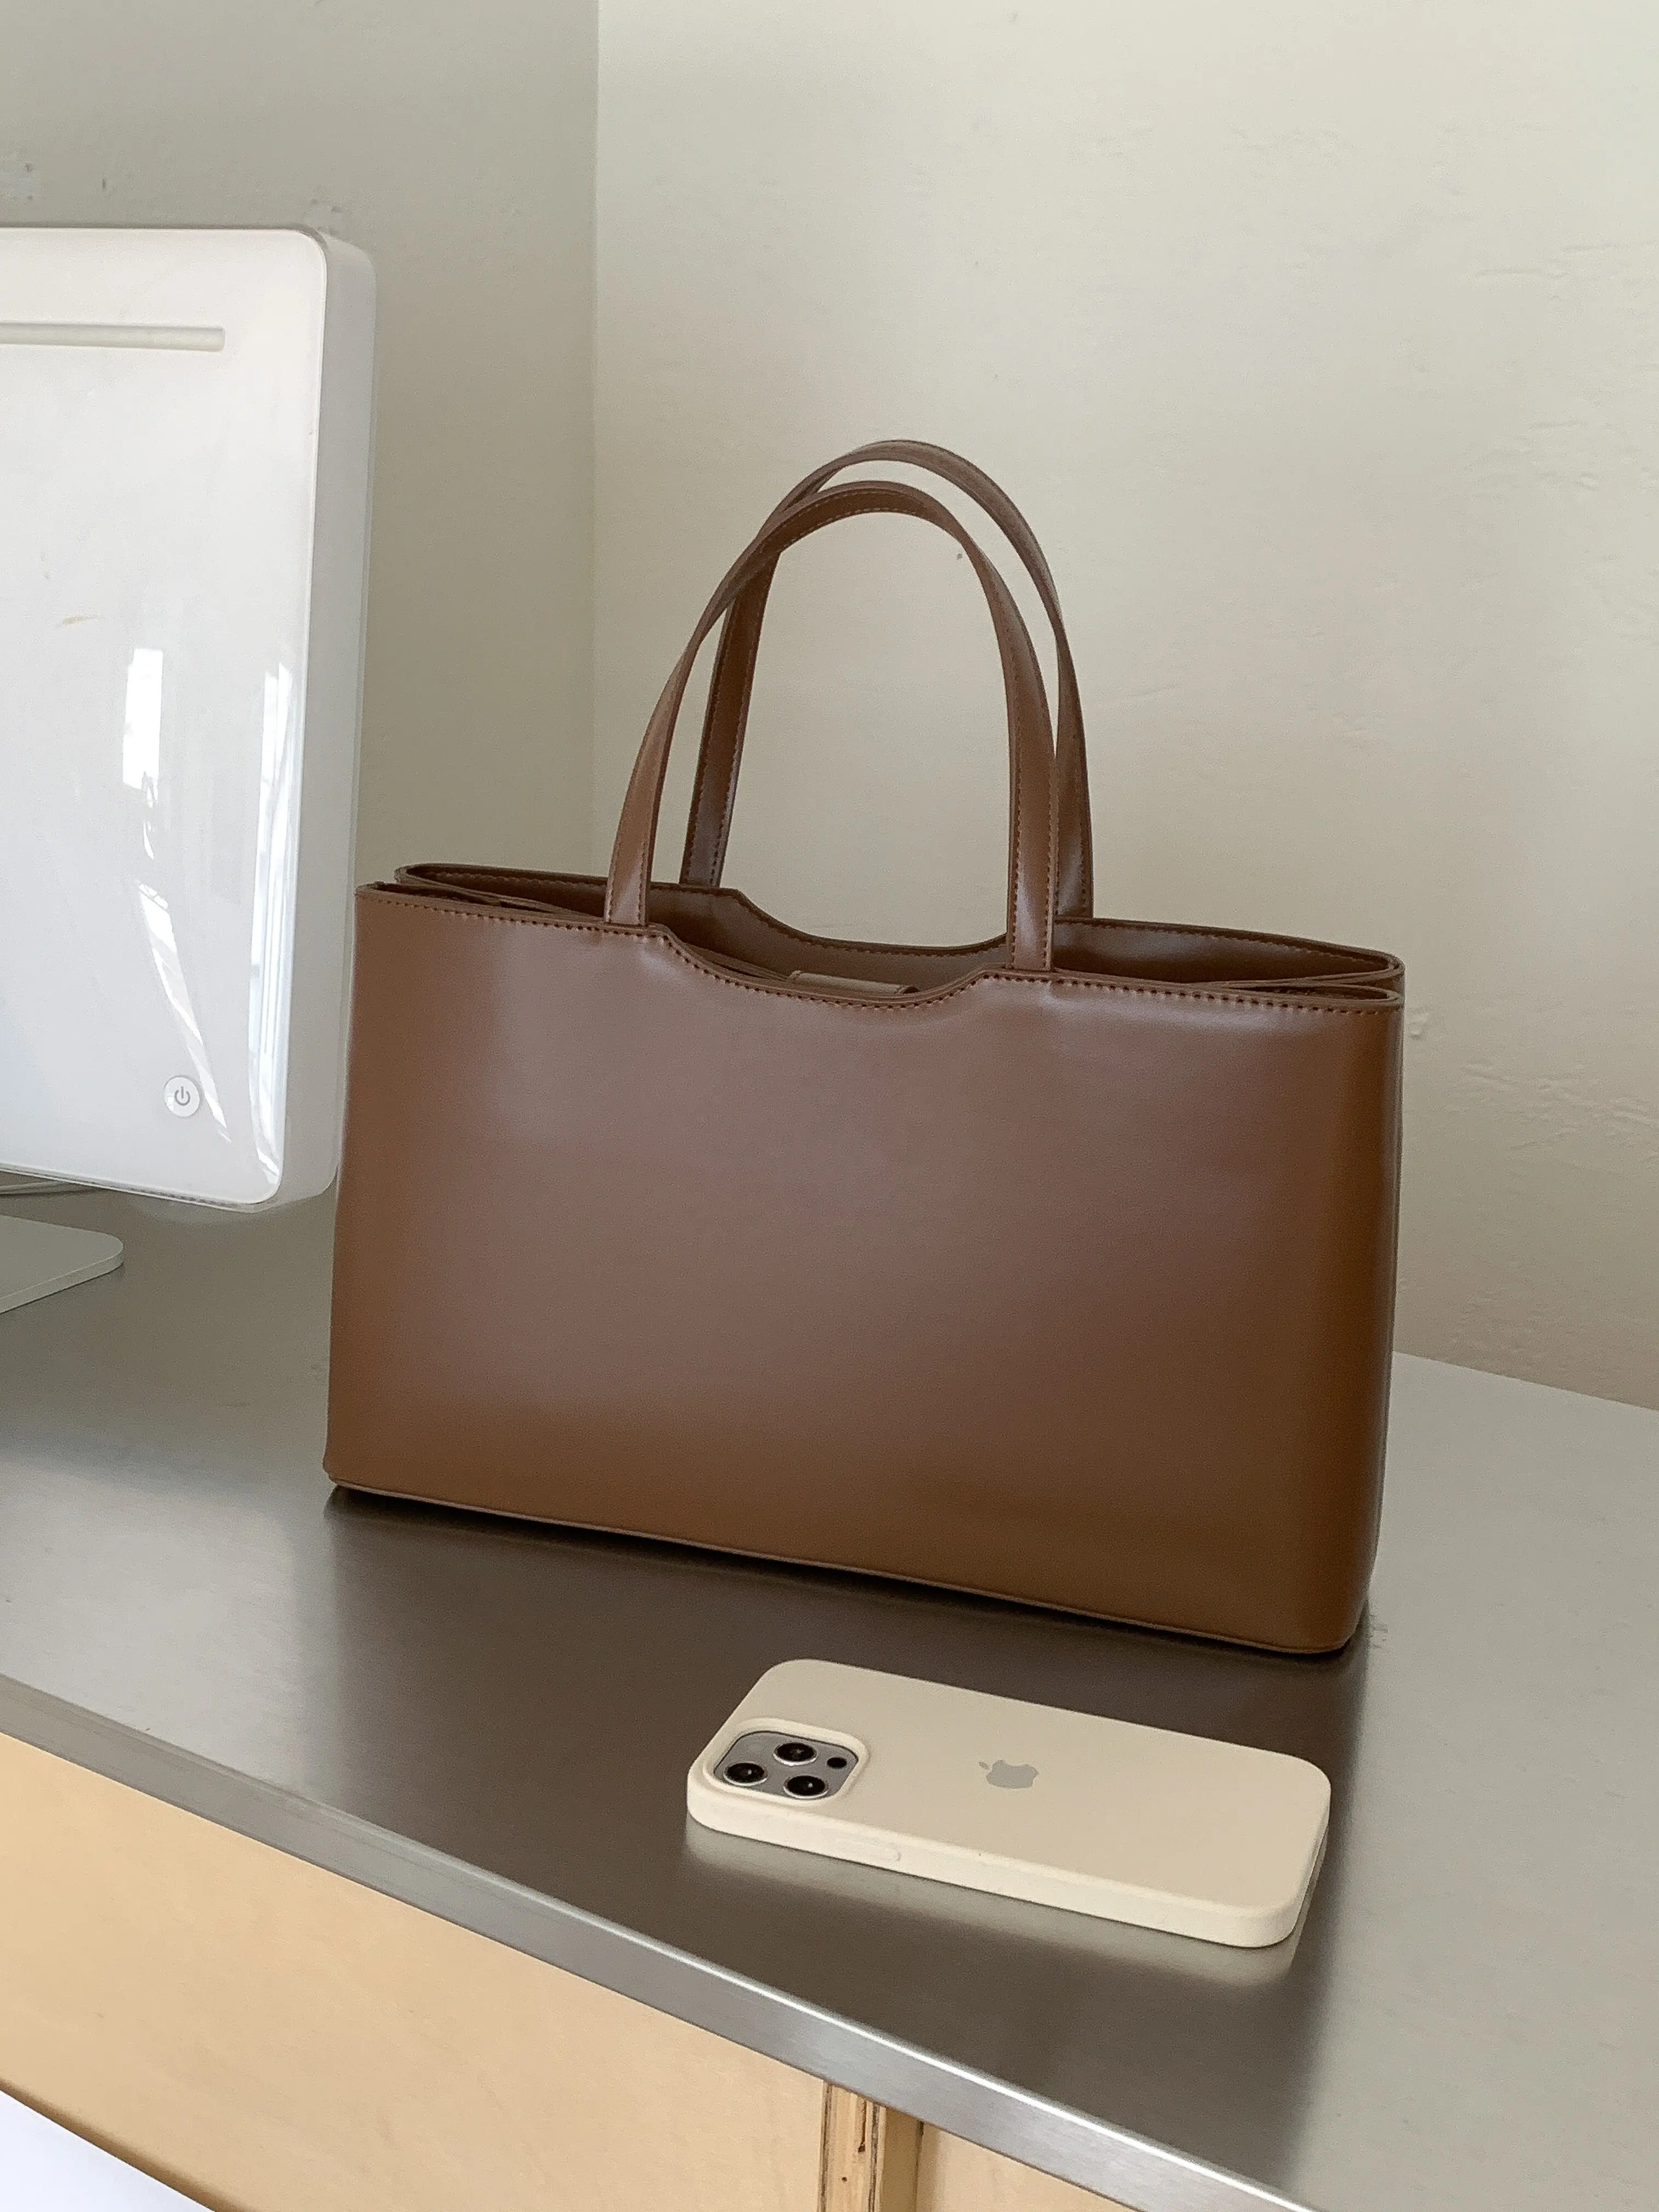 حقيبة يد بسيطة وعصرية مستطيلة الشكل مصنوعة من الجلد الصناعي حقيبة يد كلاسيكية للنساء